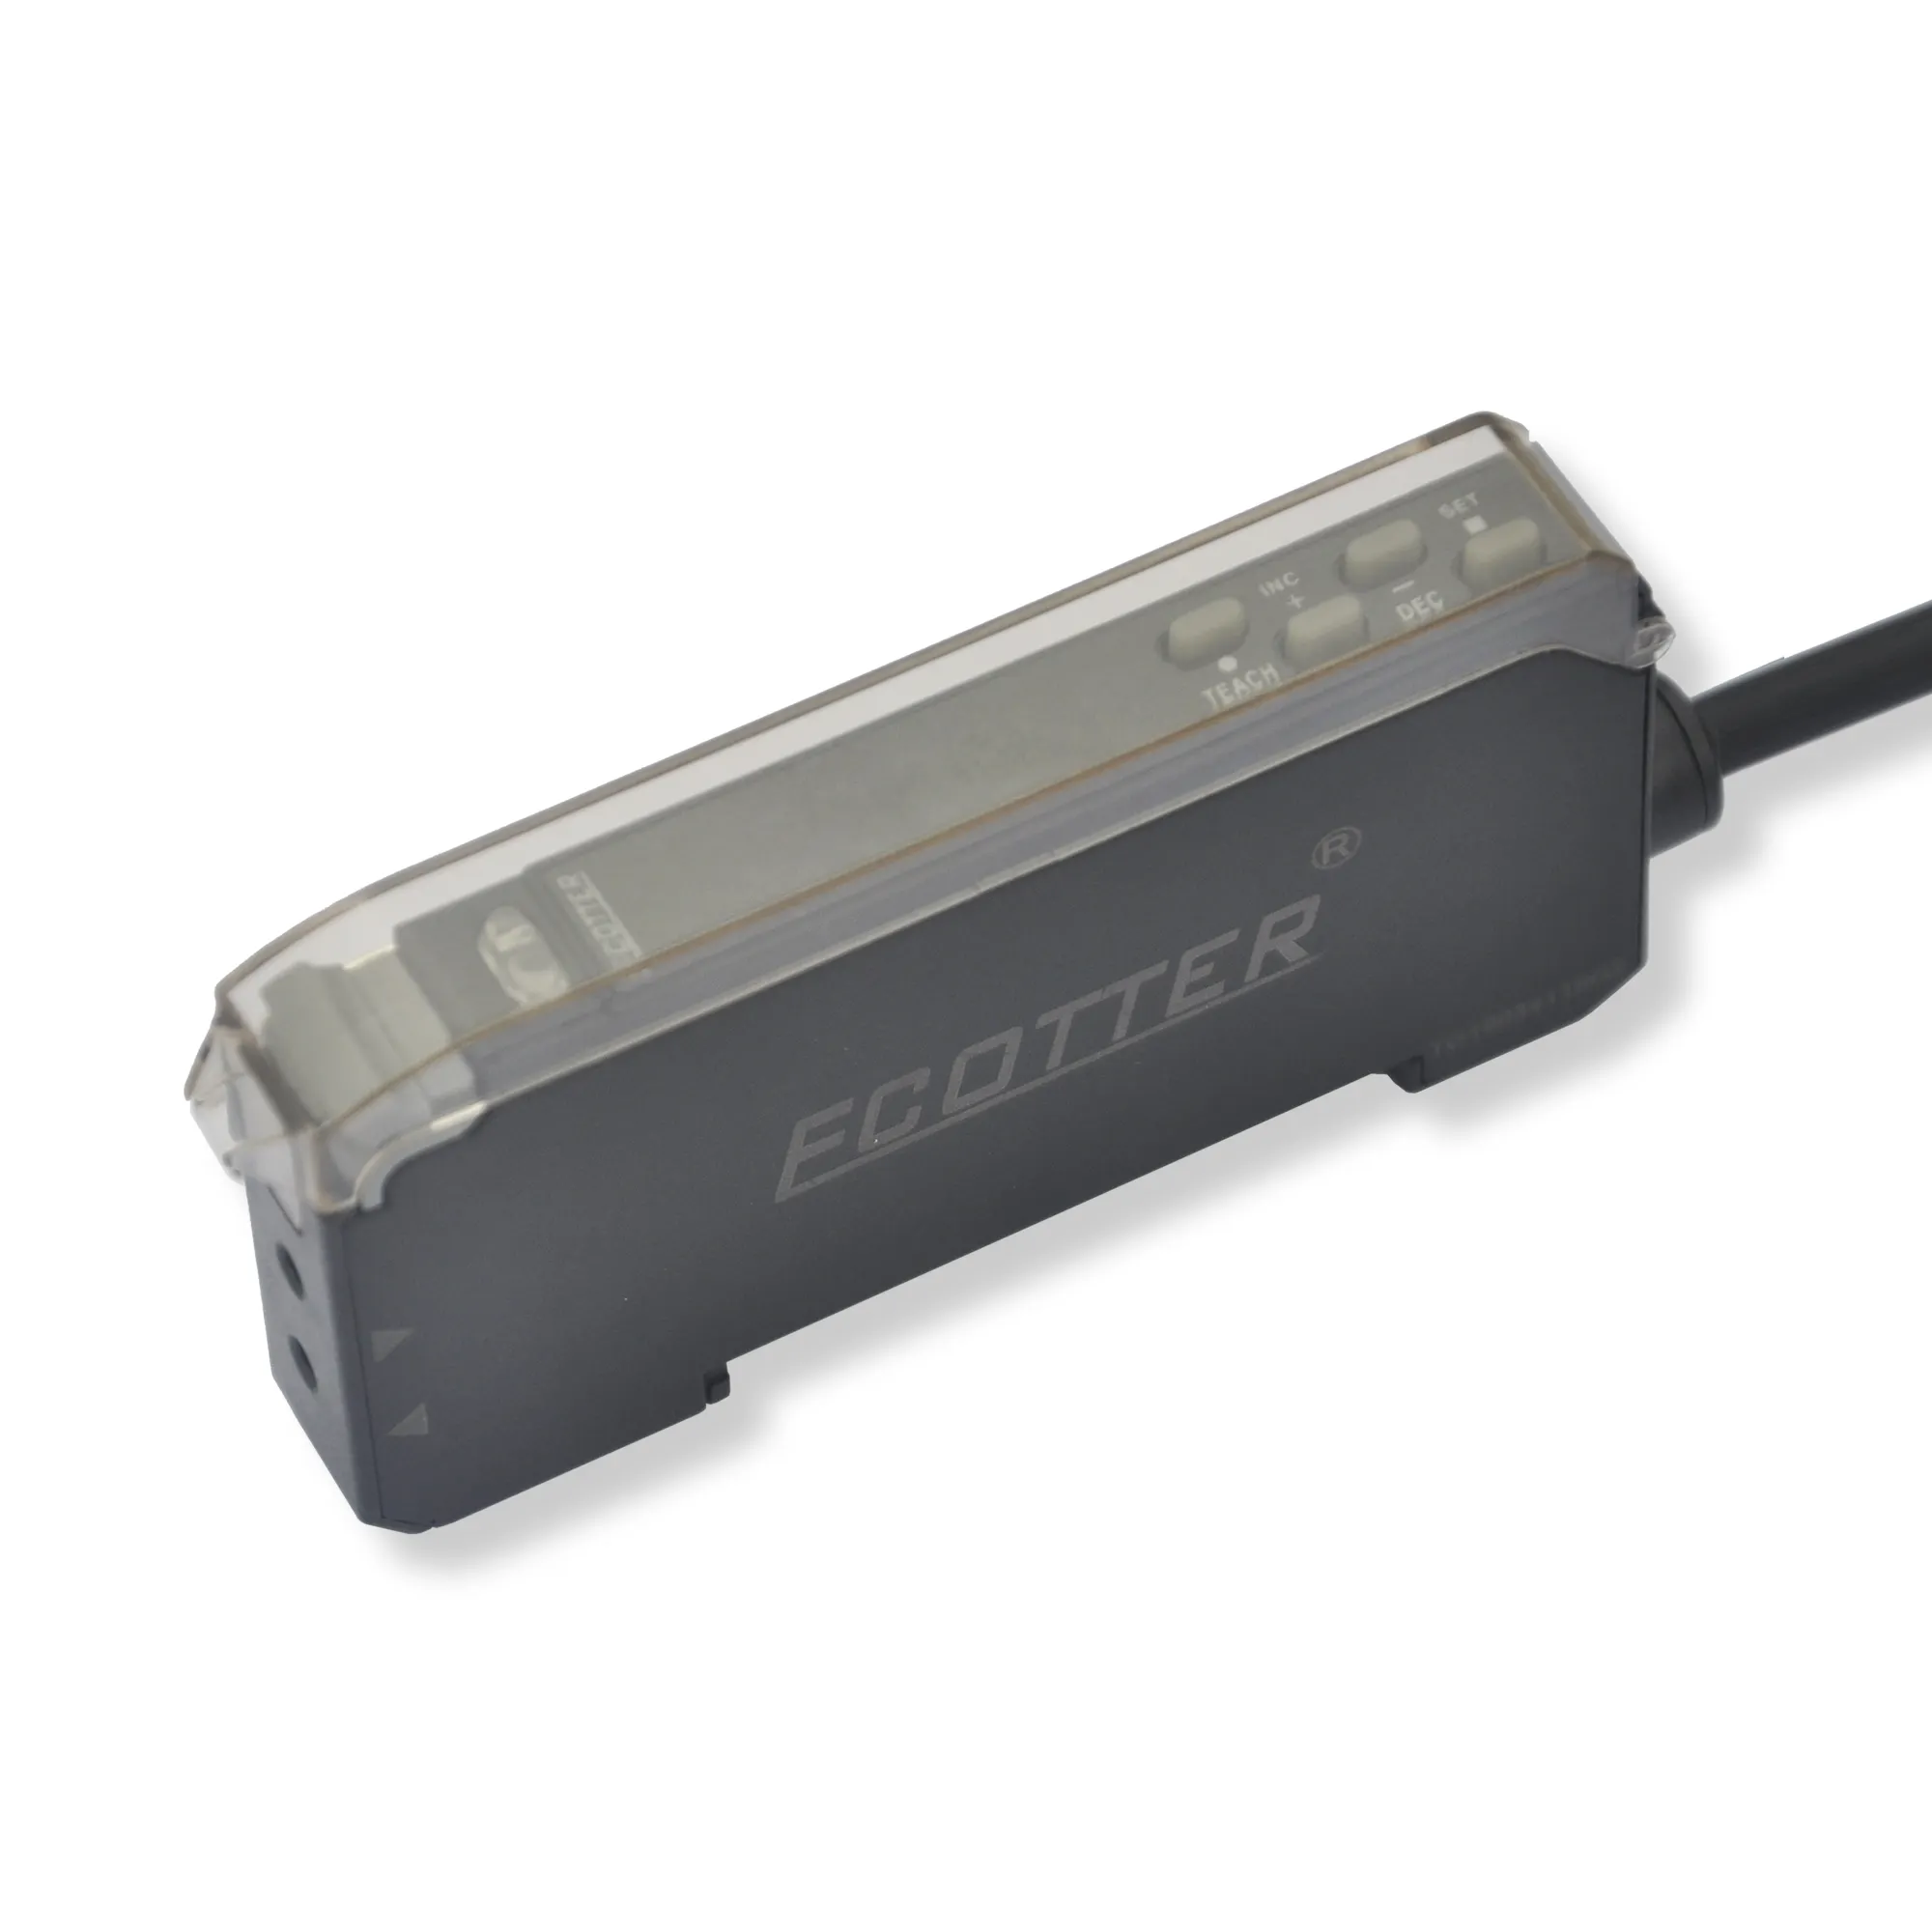 ECOTTER FG-200 de alta calidad de alta velocidad frecuencia estable económico doble óptico digital amplificador de fibra de Sensor